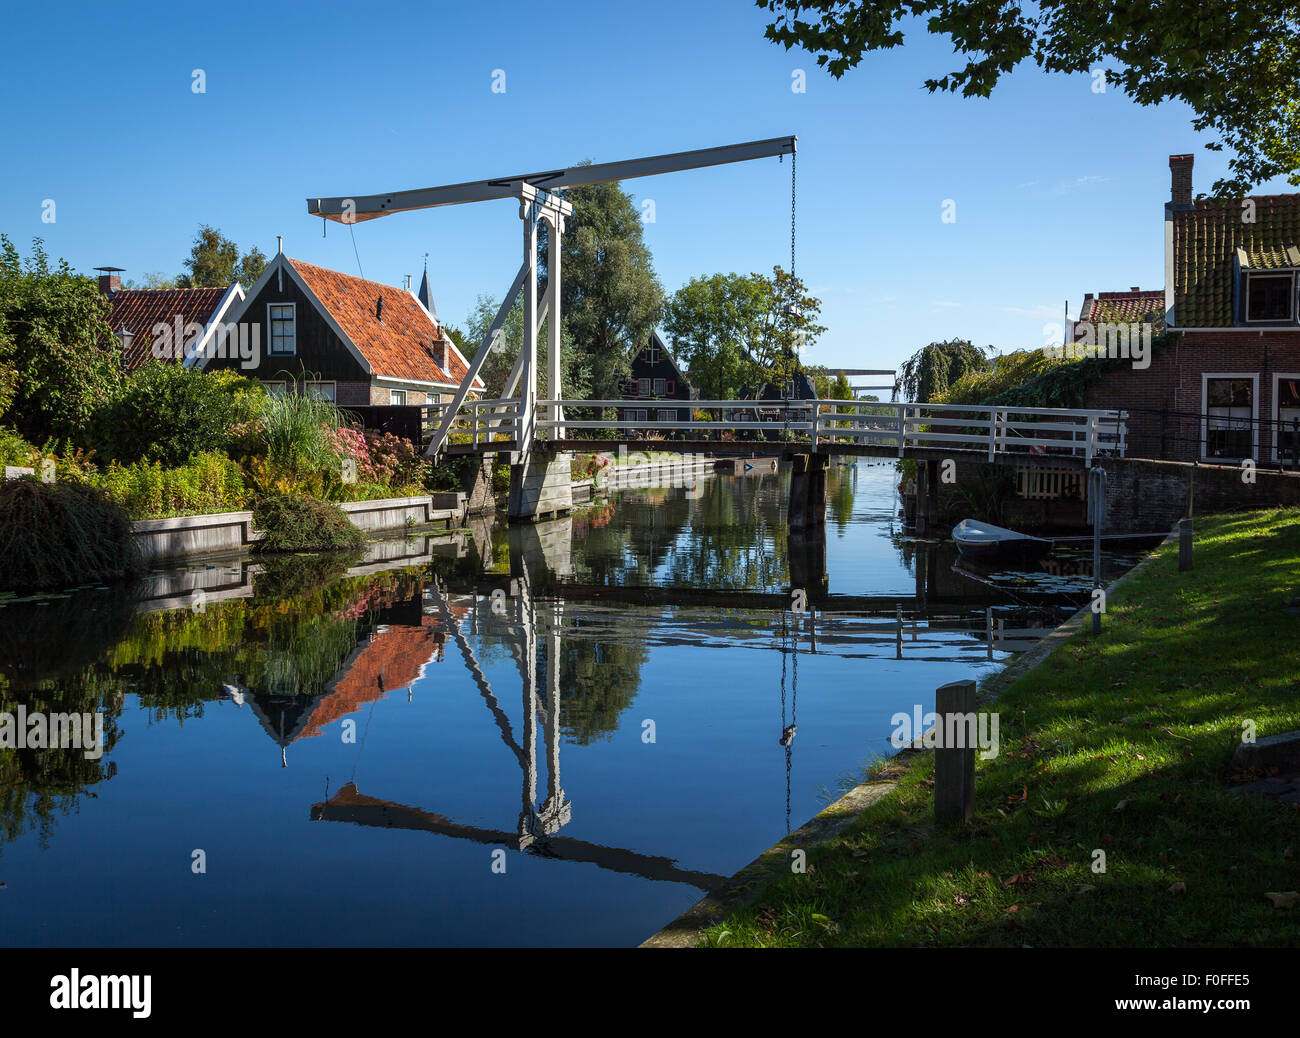 Traditionelle ländliche Umgebung eines kleinen Dorfes in Holland, Niederlande. Aussetzung Fuß Brücke überqueren den Fluss. Stockfoto